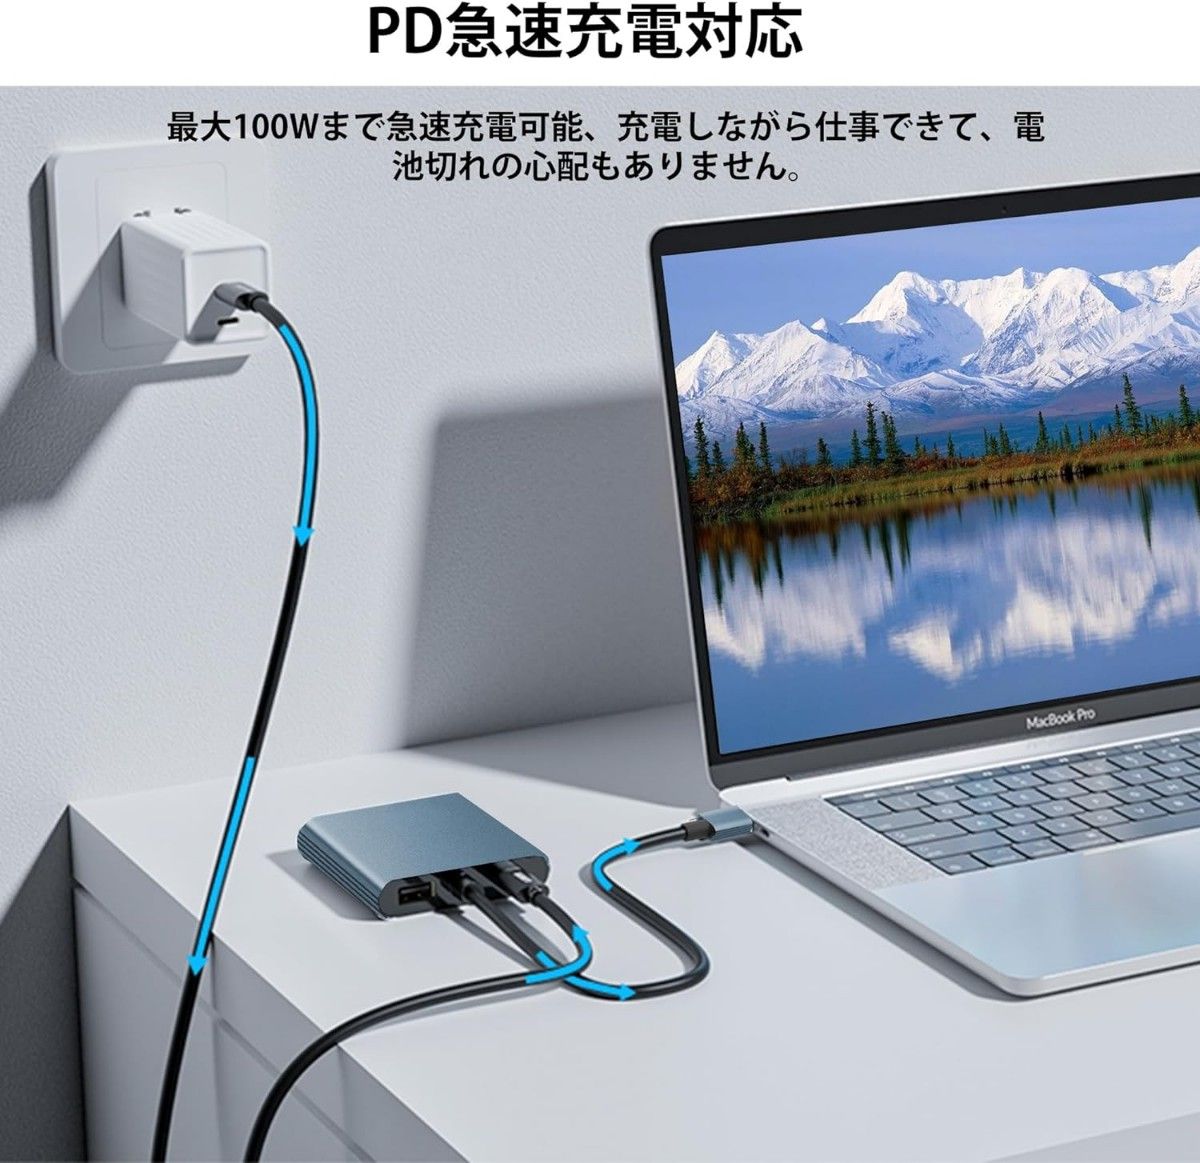 USB C HDMI 変換アダプター Aibilangose デュアル HDMI Type-C マルチディスプレイアダプタ①